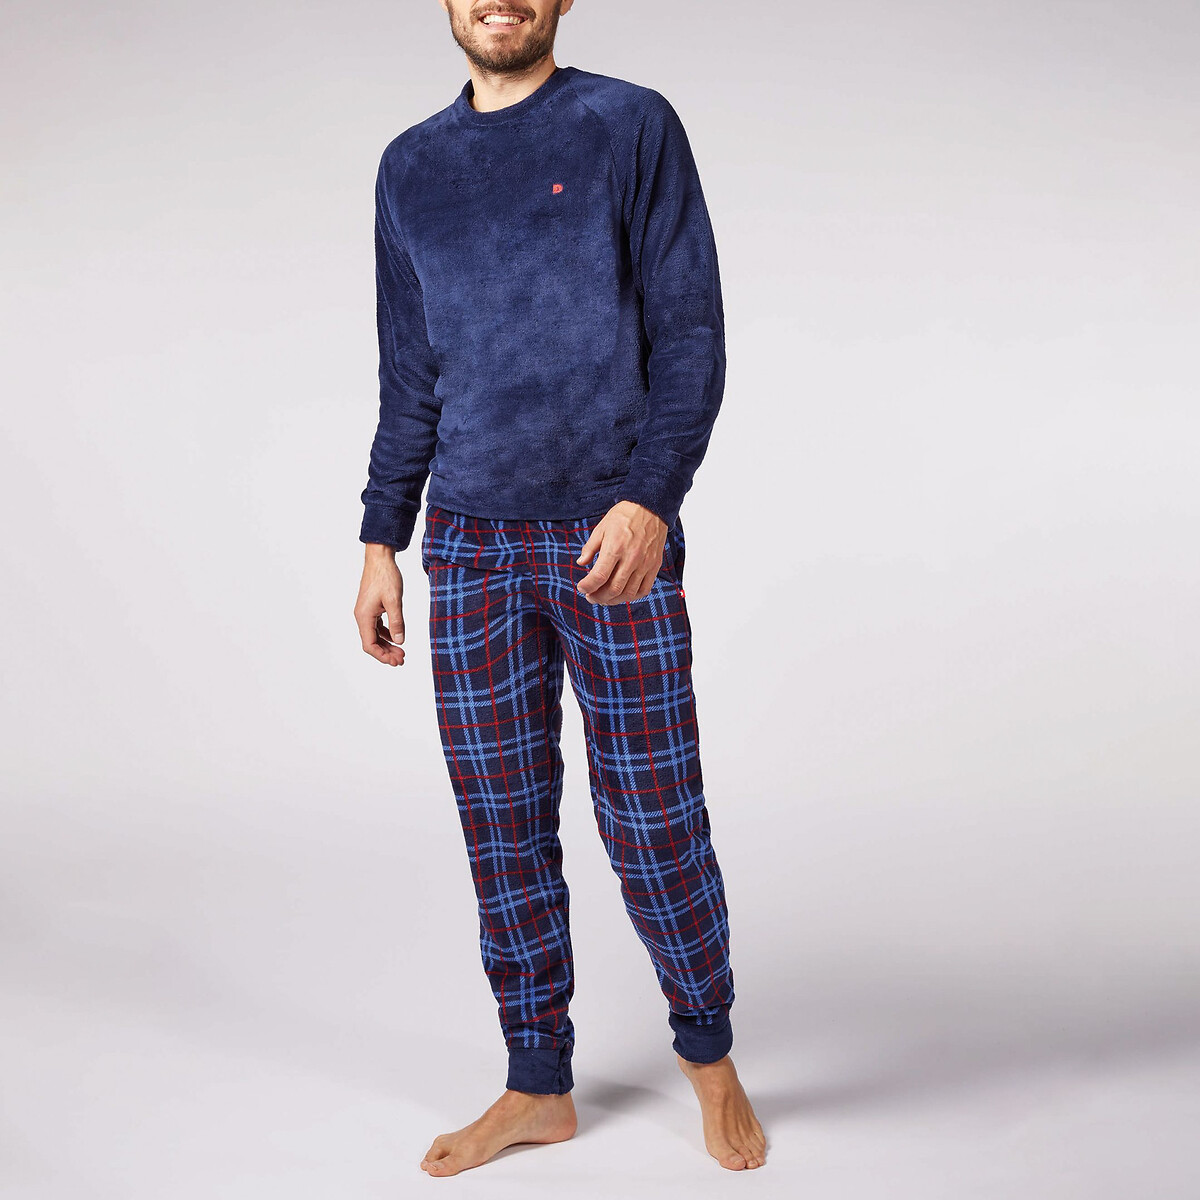 Reve Printed Pyjamas with Long Sleeves